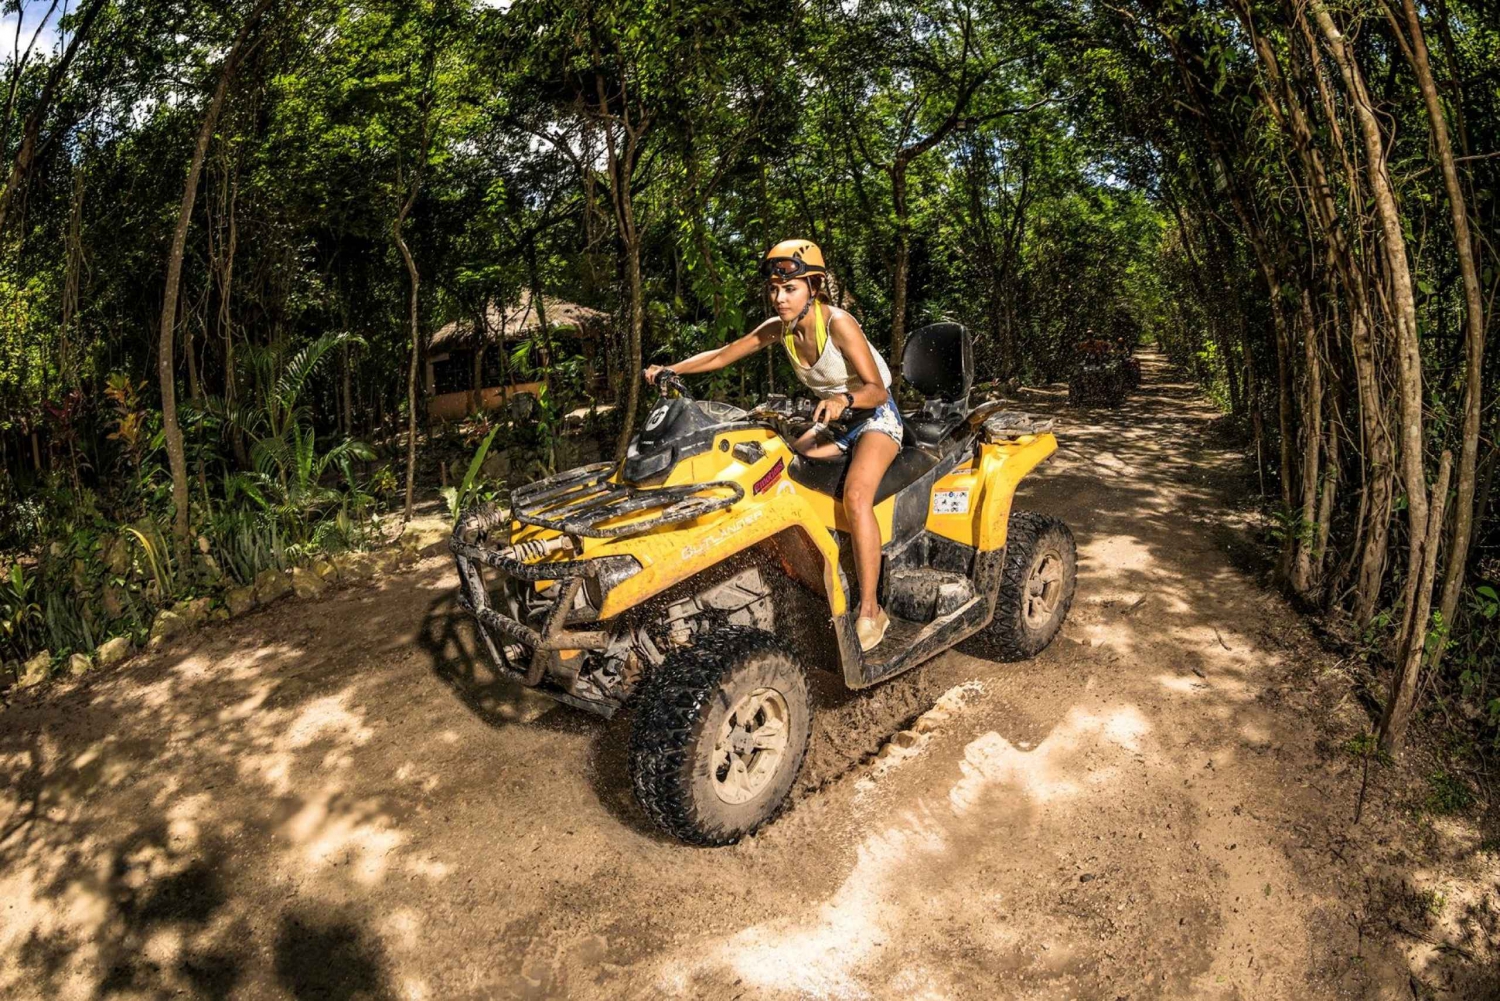 Playa del Carmen: Native Park Entrance Ticket with ATV Ride